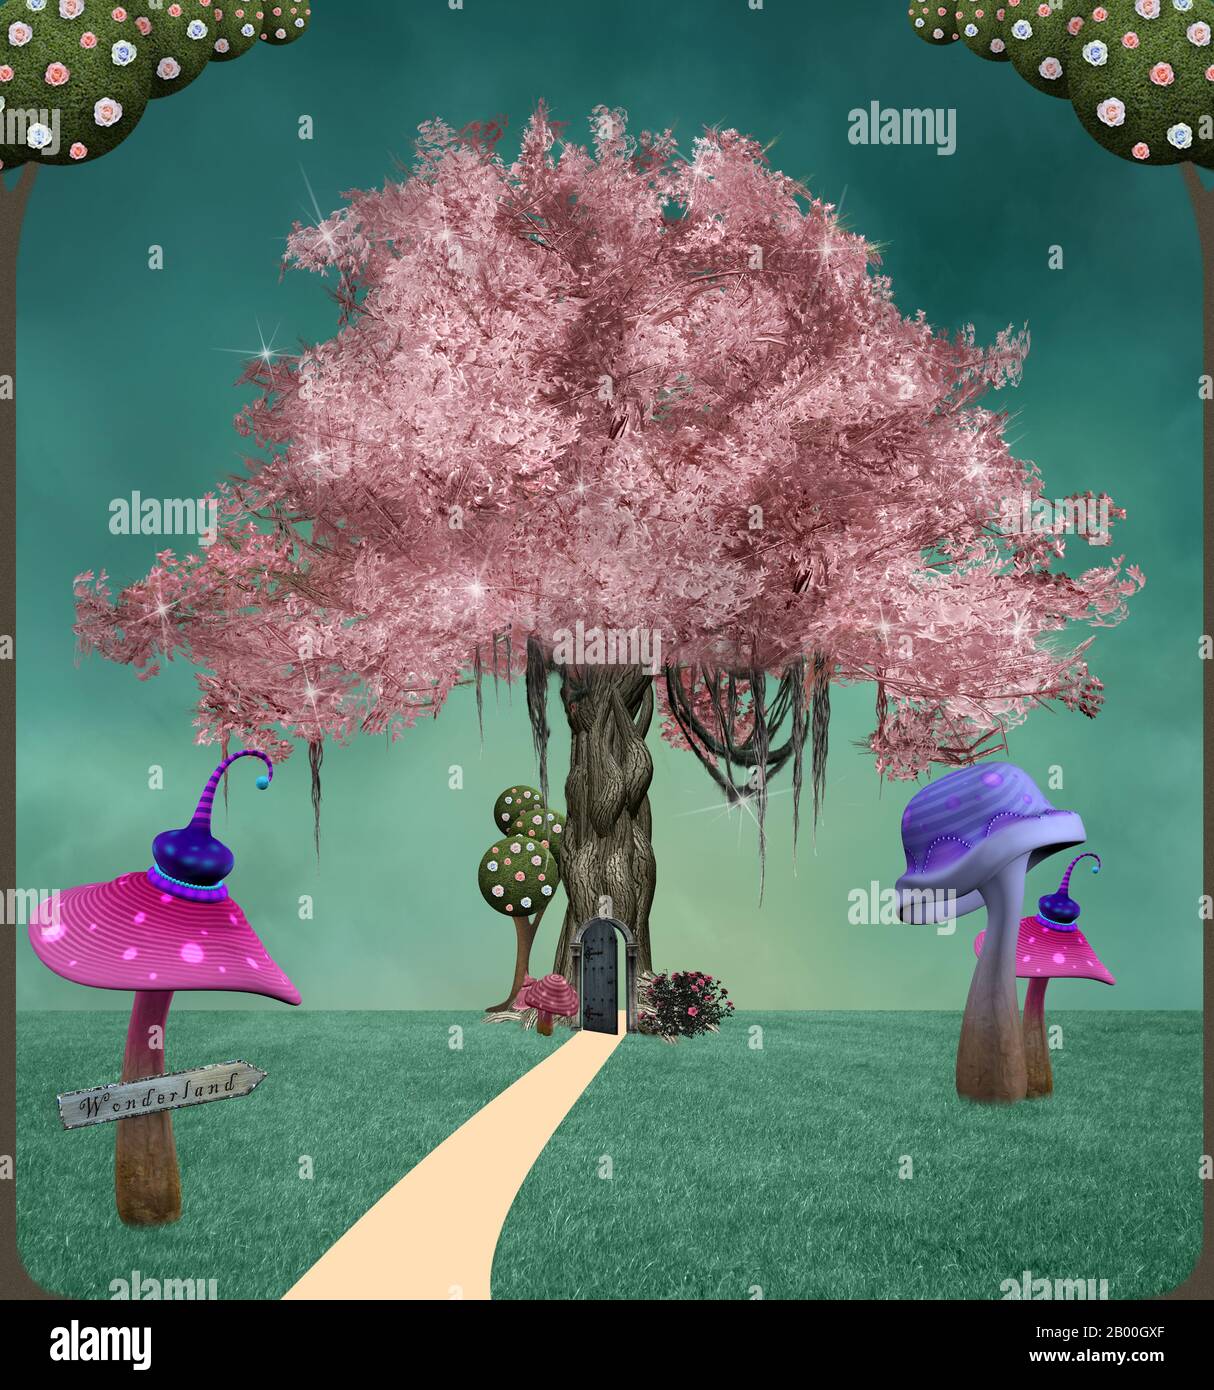 Arbre rose dans un jardin de fantaisie avec des champignons colorés Banque D'Images